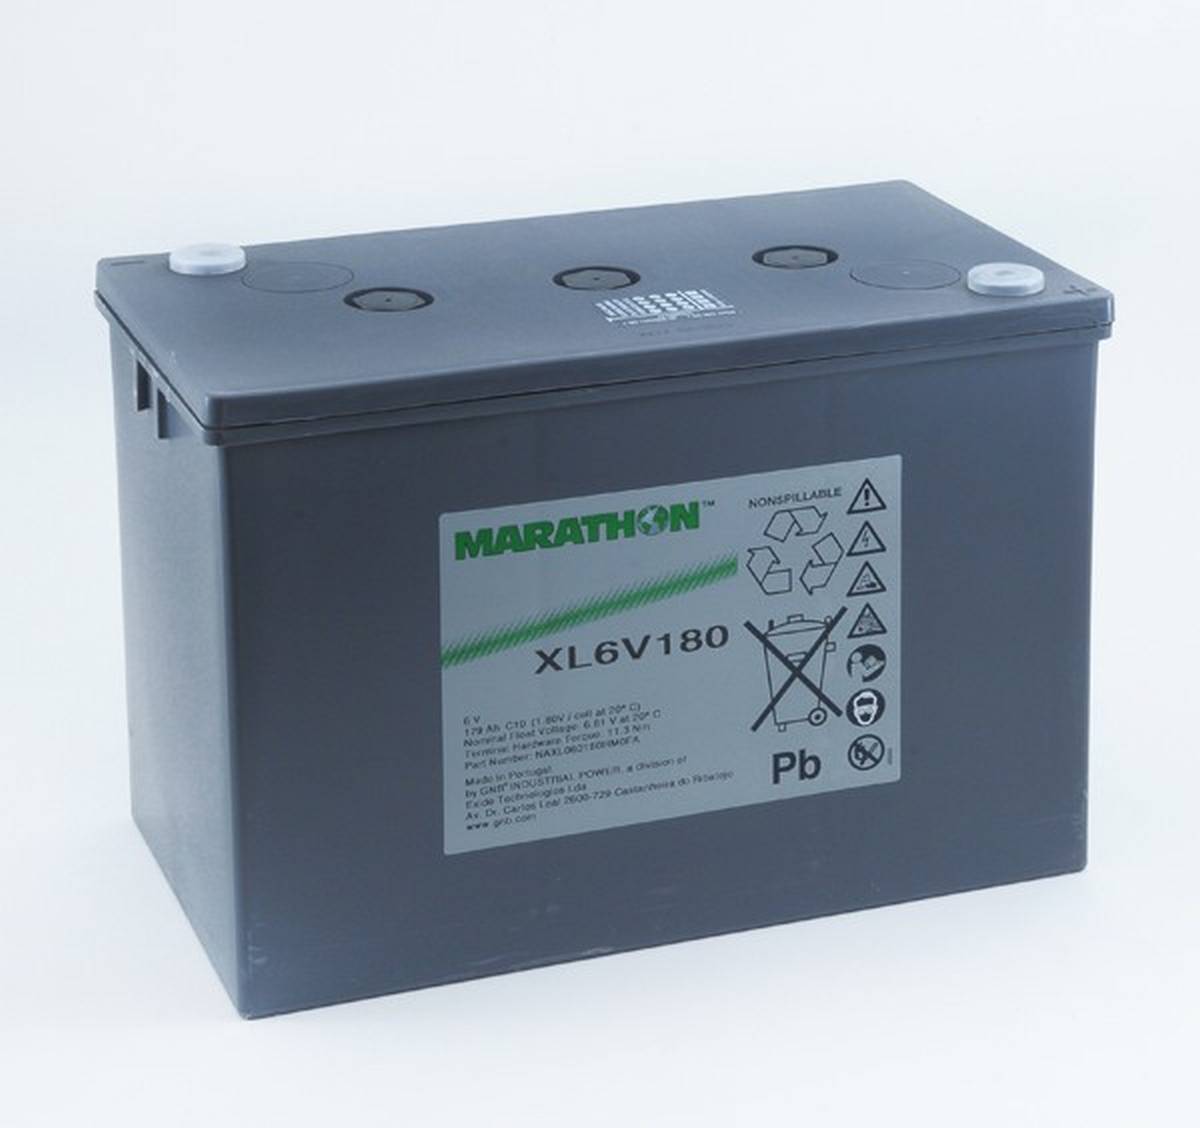 Exide Marathon XL6V180 6V 179Ah AGM Lead Battery